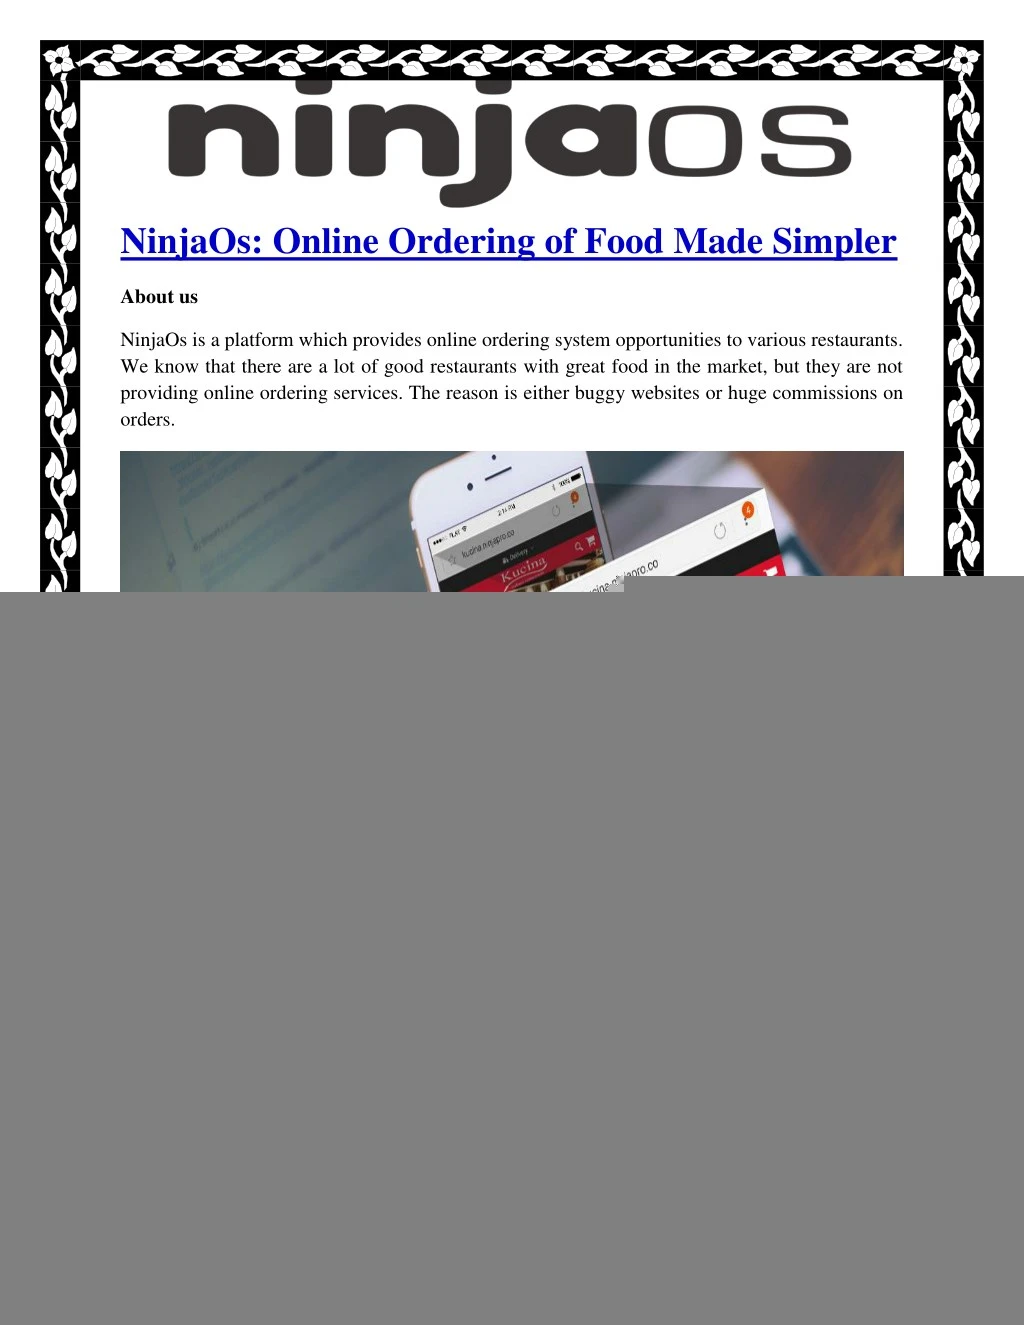 ninjaos online ordering of food made simpler